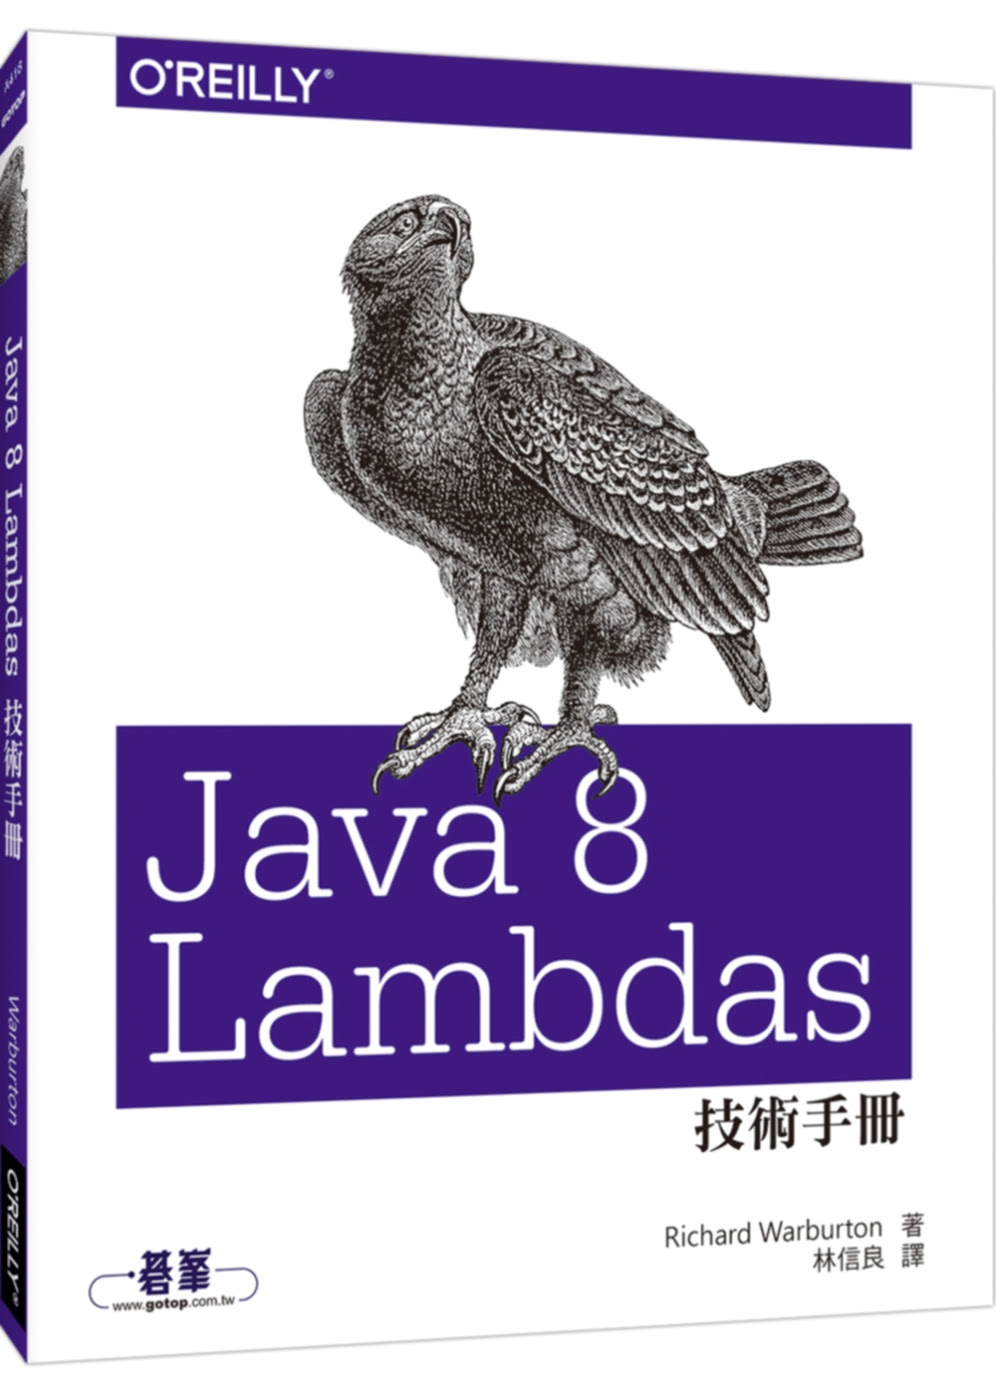 java 8 lambdas pragmatic functional programming by richard warburton pdf